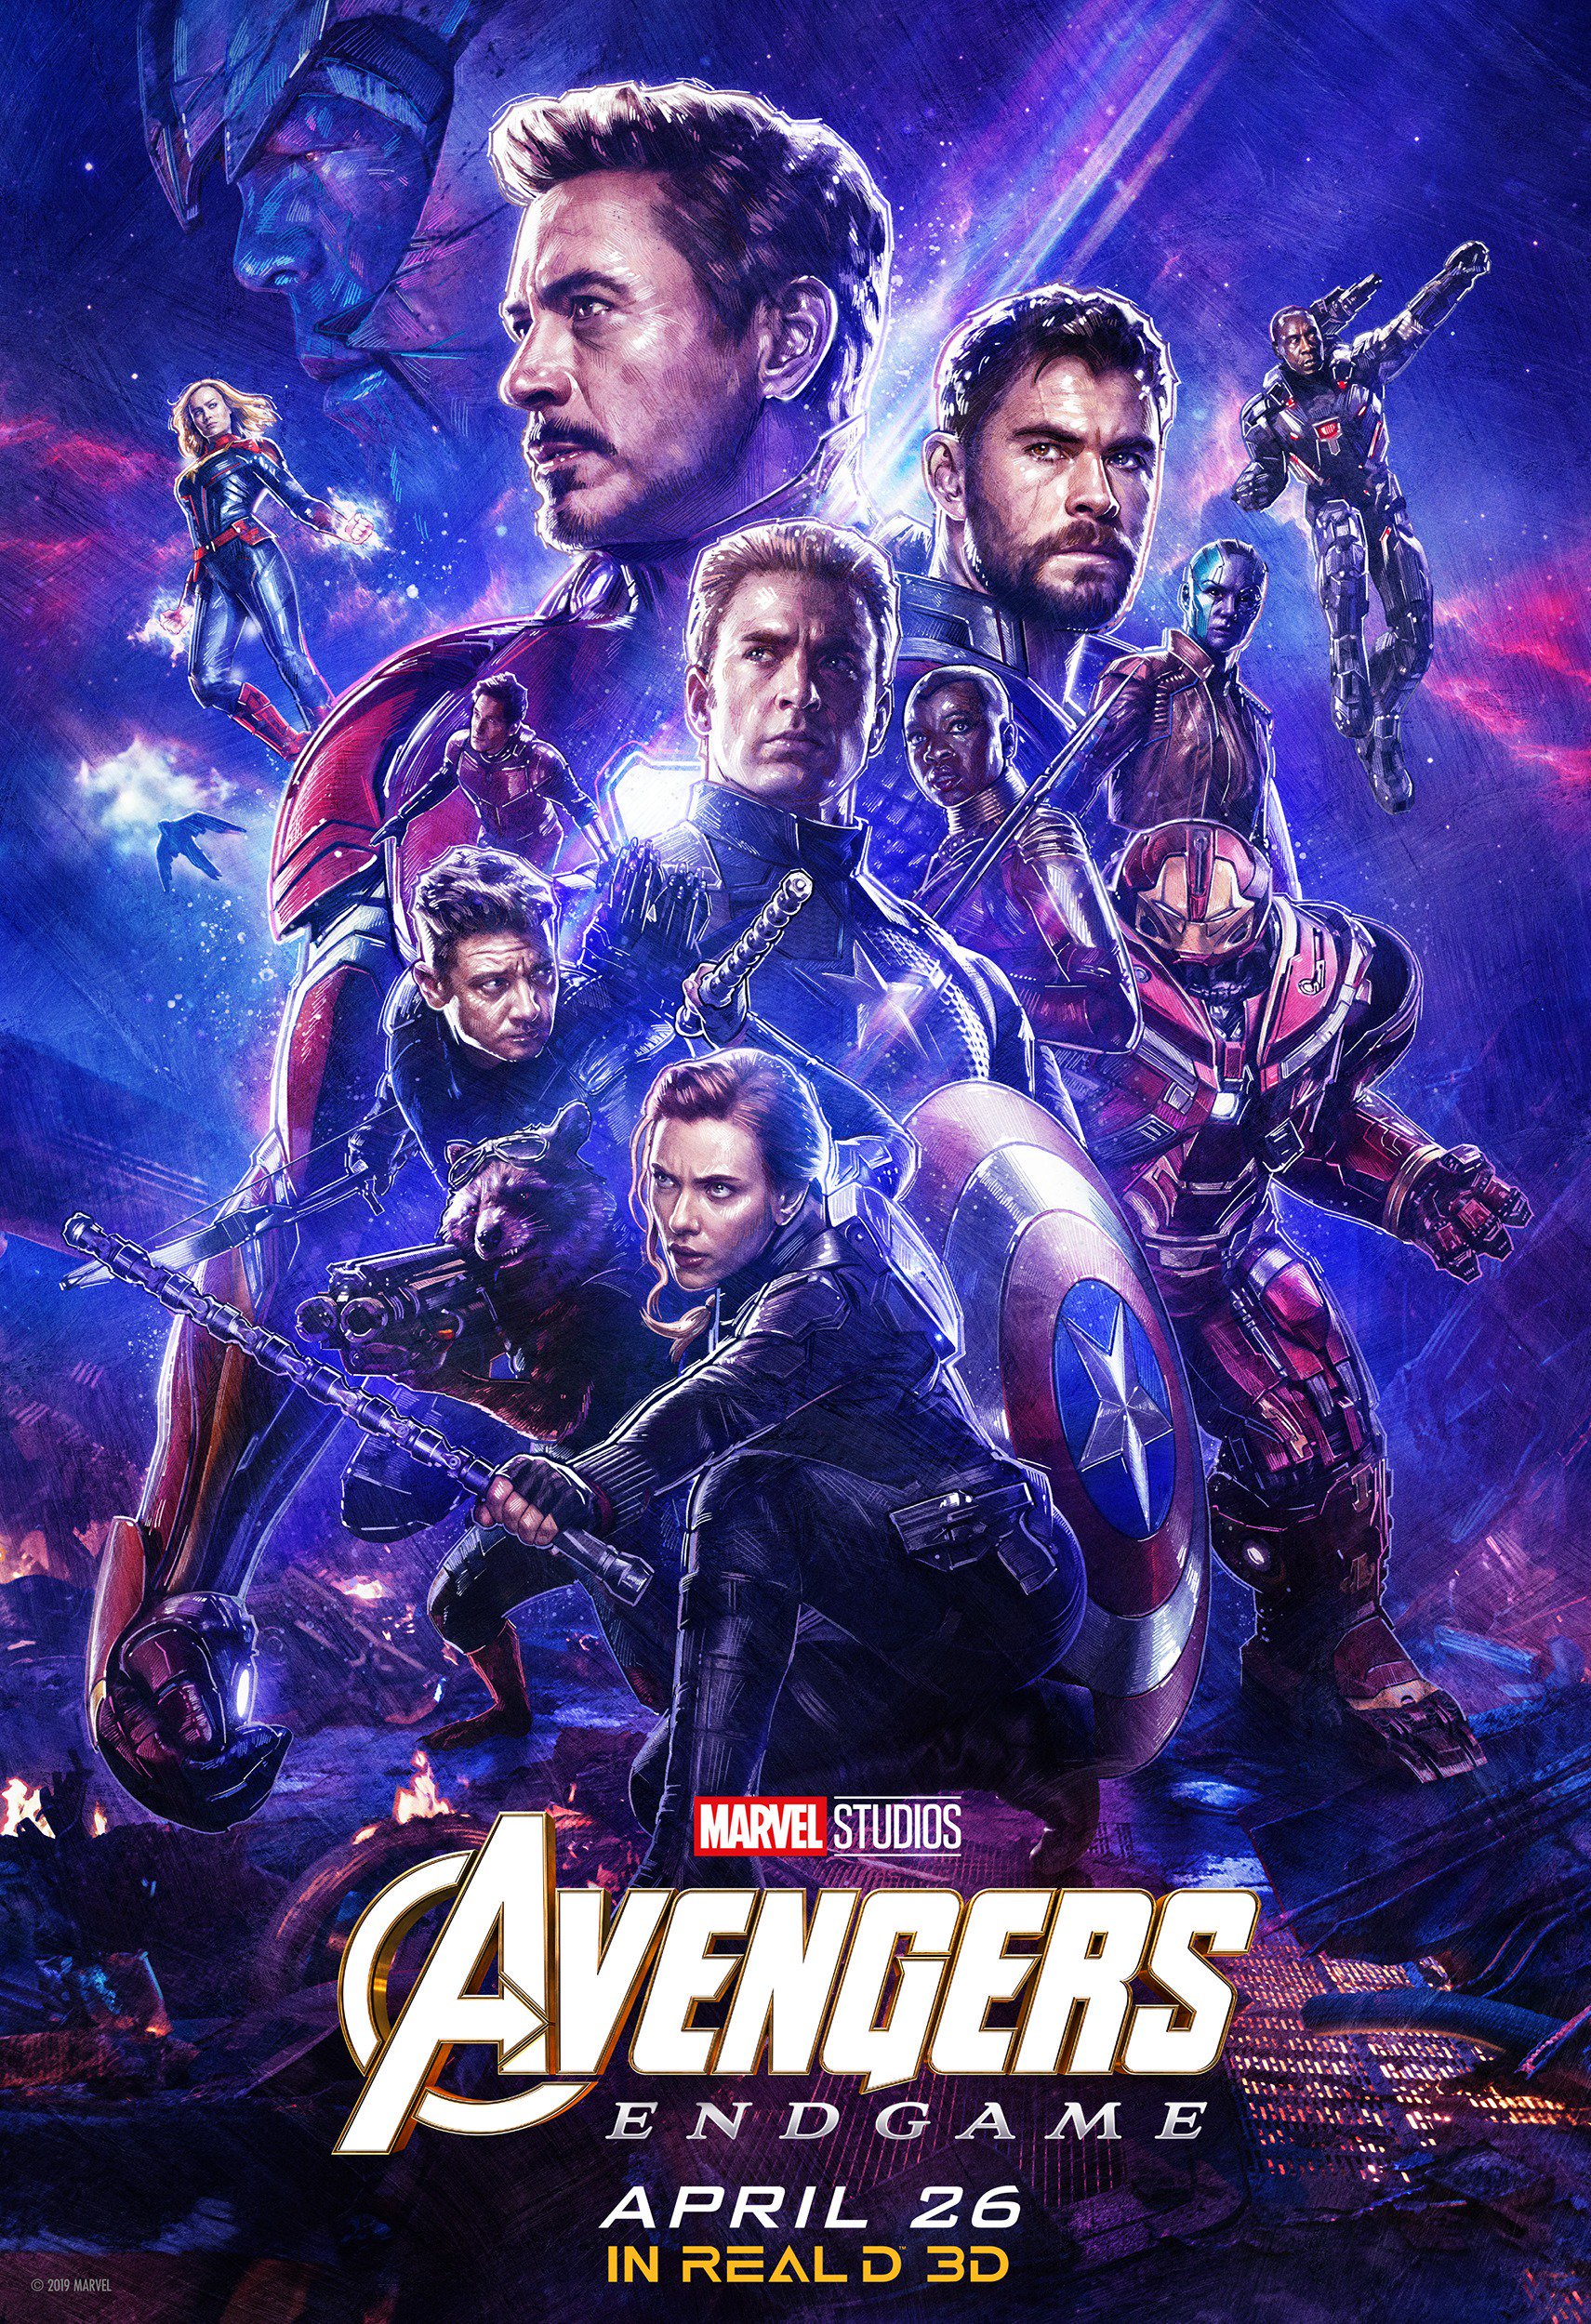 Real D 3D poster for Avengers: Endgame